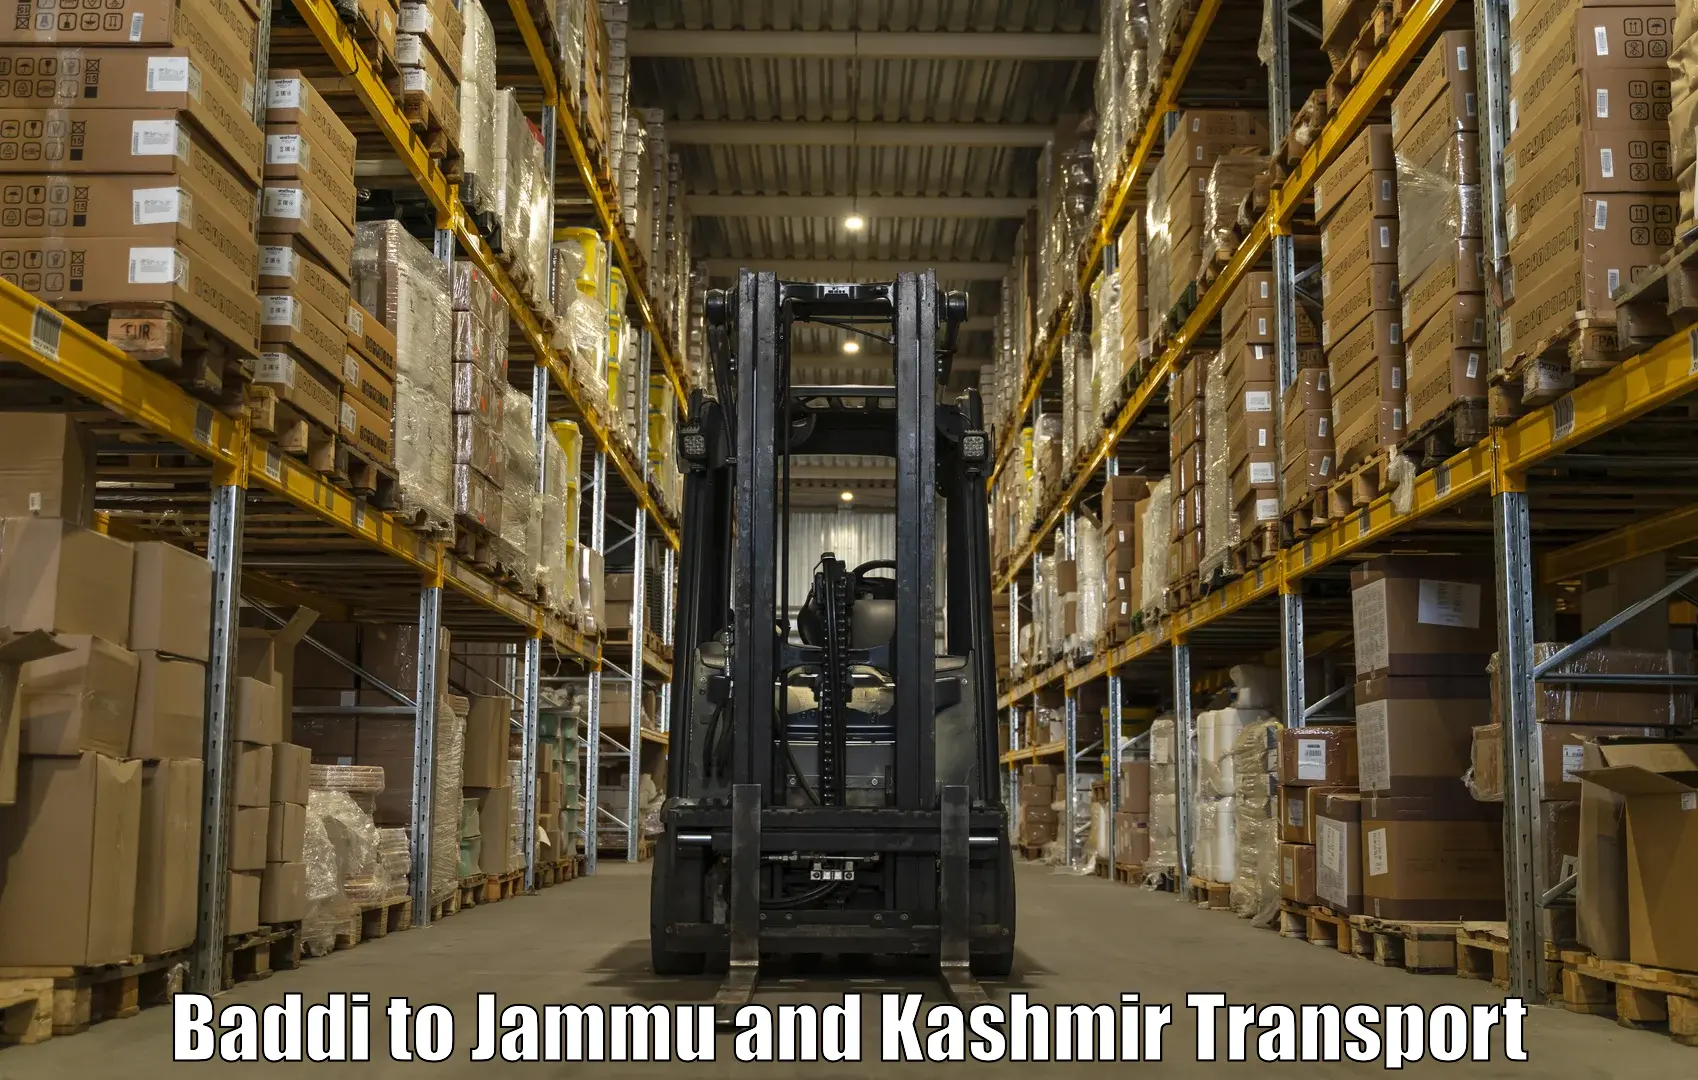 Shipping partner Baddi to Ramnagar Udhampur